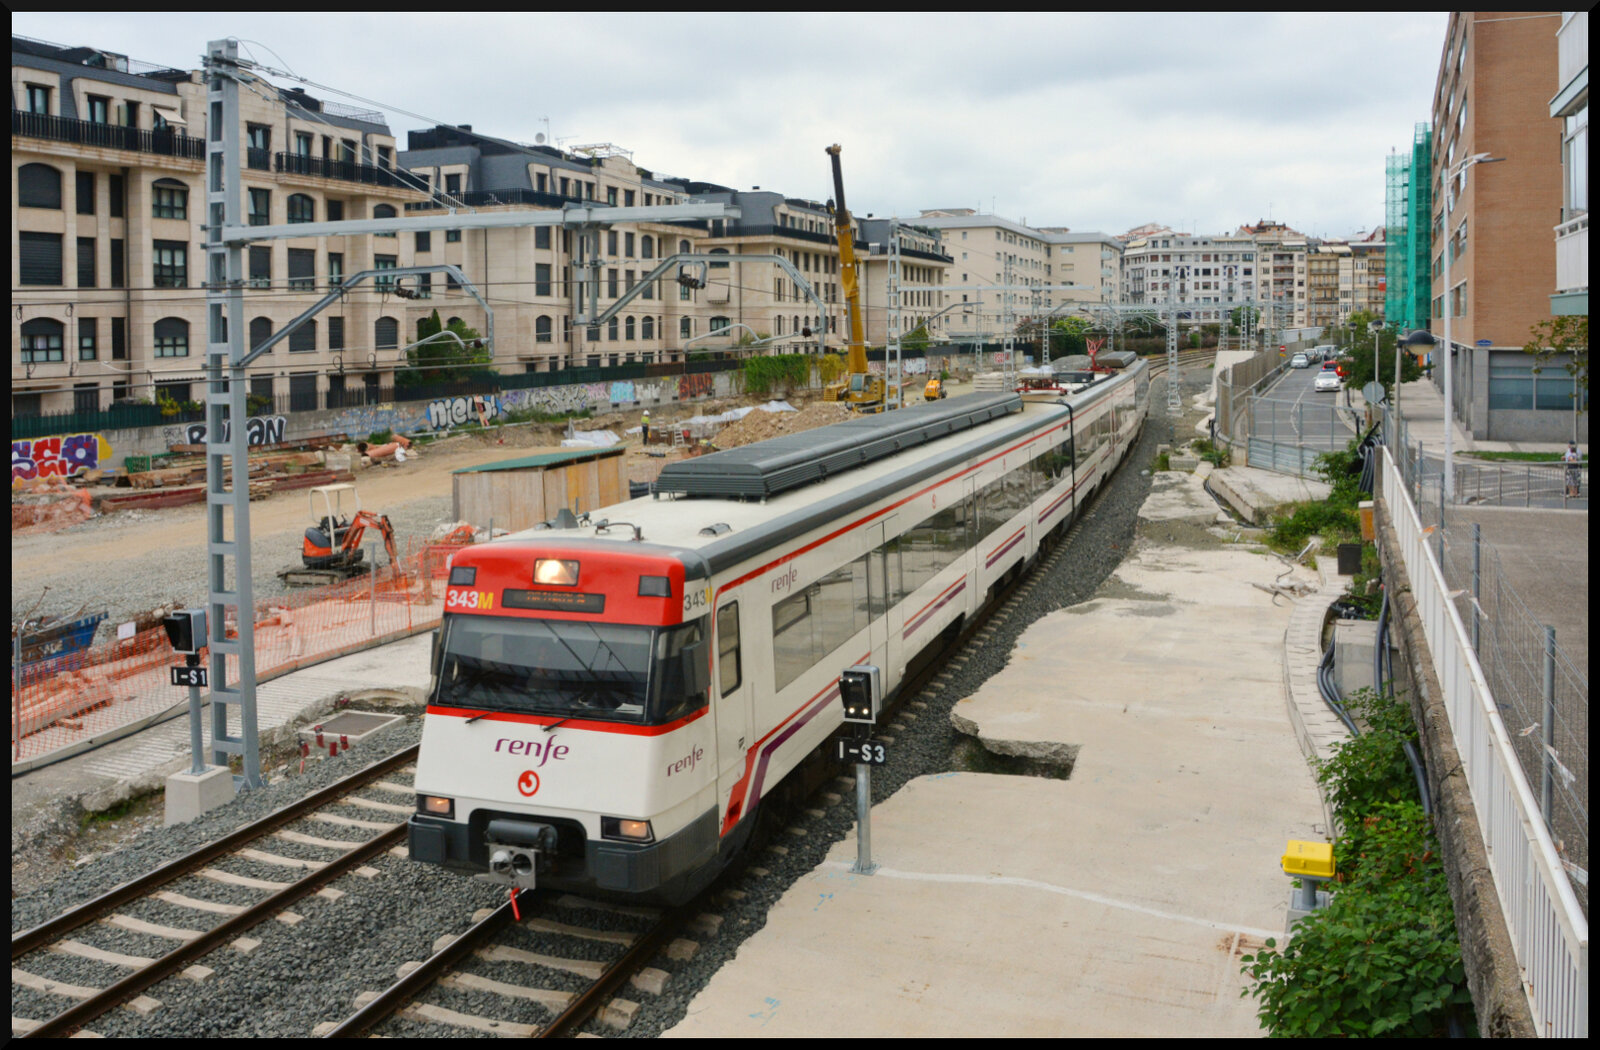 Großbaustelle: Mit dem Bau der neuen normalspurigen Hochgeschwindigkeitsstrecke  baskisches Ypsilon  (Madrid) - Vitoria-Gasteiz - Bilbao/San Sebastian wird der Breitspur-Bahnhof San Sebastian komplett umgebaut und modernisiert. Zukünftig werden hier normalspurige und Breitspurfahrzeuge auf Dreischienengleisen verkehren. 2027 sollen der Bahnhof und die Hochgeschwindigkeitsstrecke in Betrieb gehen. Am 16.08.2023 rollt ein Triebzug der Renfe-Baureihe 446 aus Irun auf Gleis 1 in den Bahnhof.